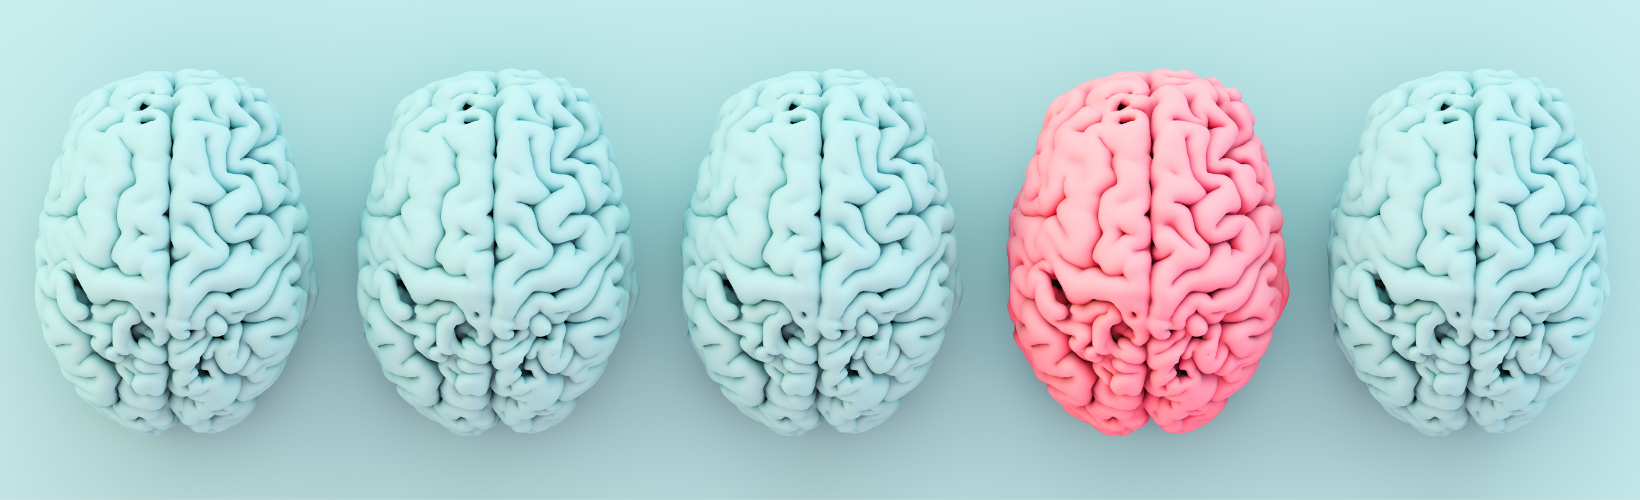 plaatje van gekleurde hersenen blauw en roze